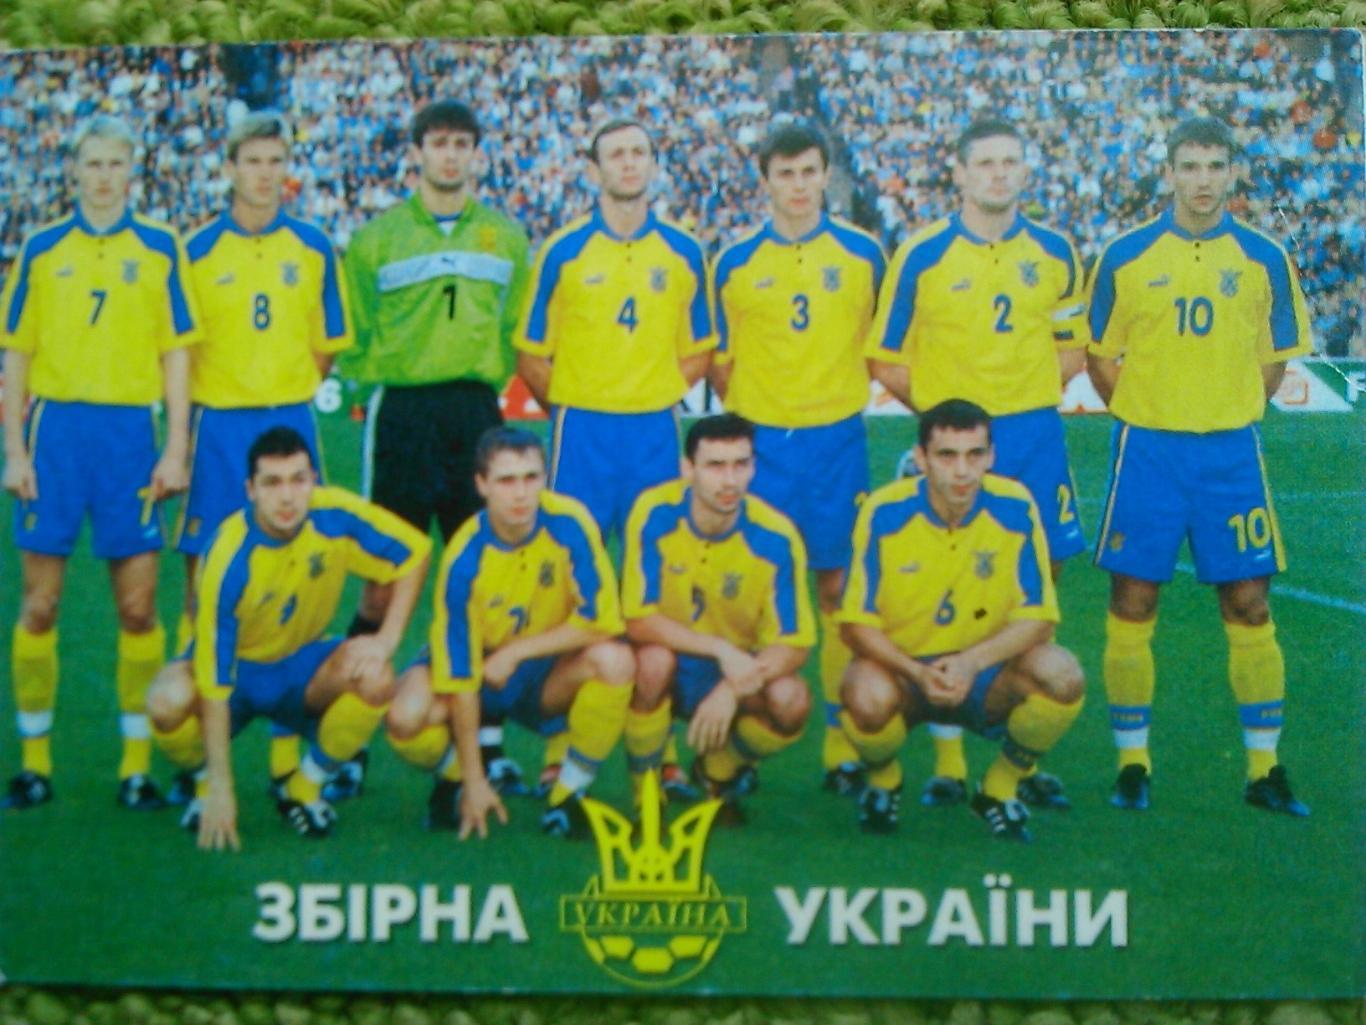 ЗБІРНА УКРАЇНИ (Украины) -календарик 2000. Оптом скидки до 45%!